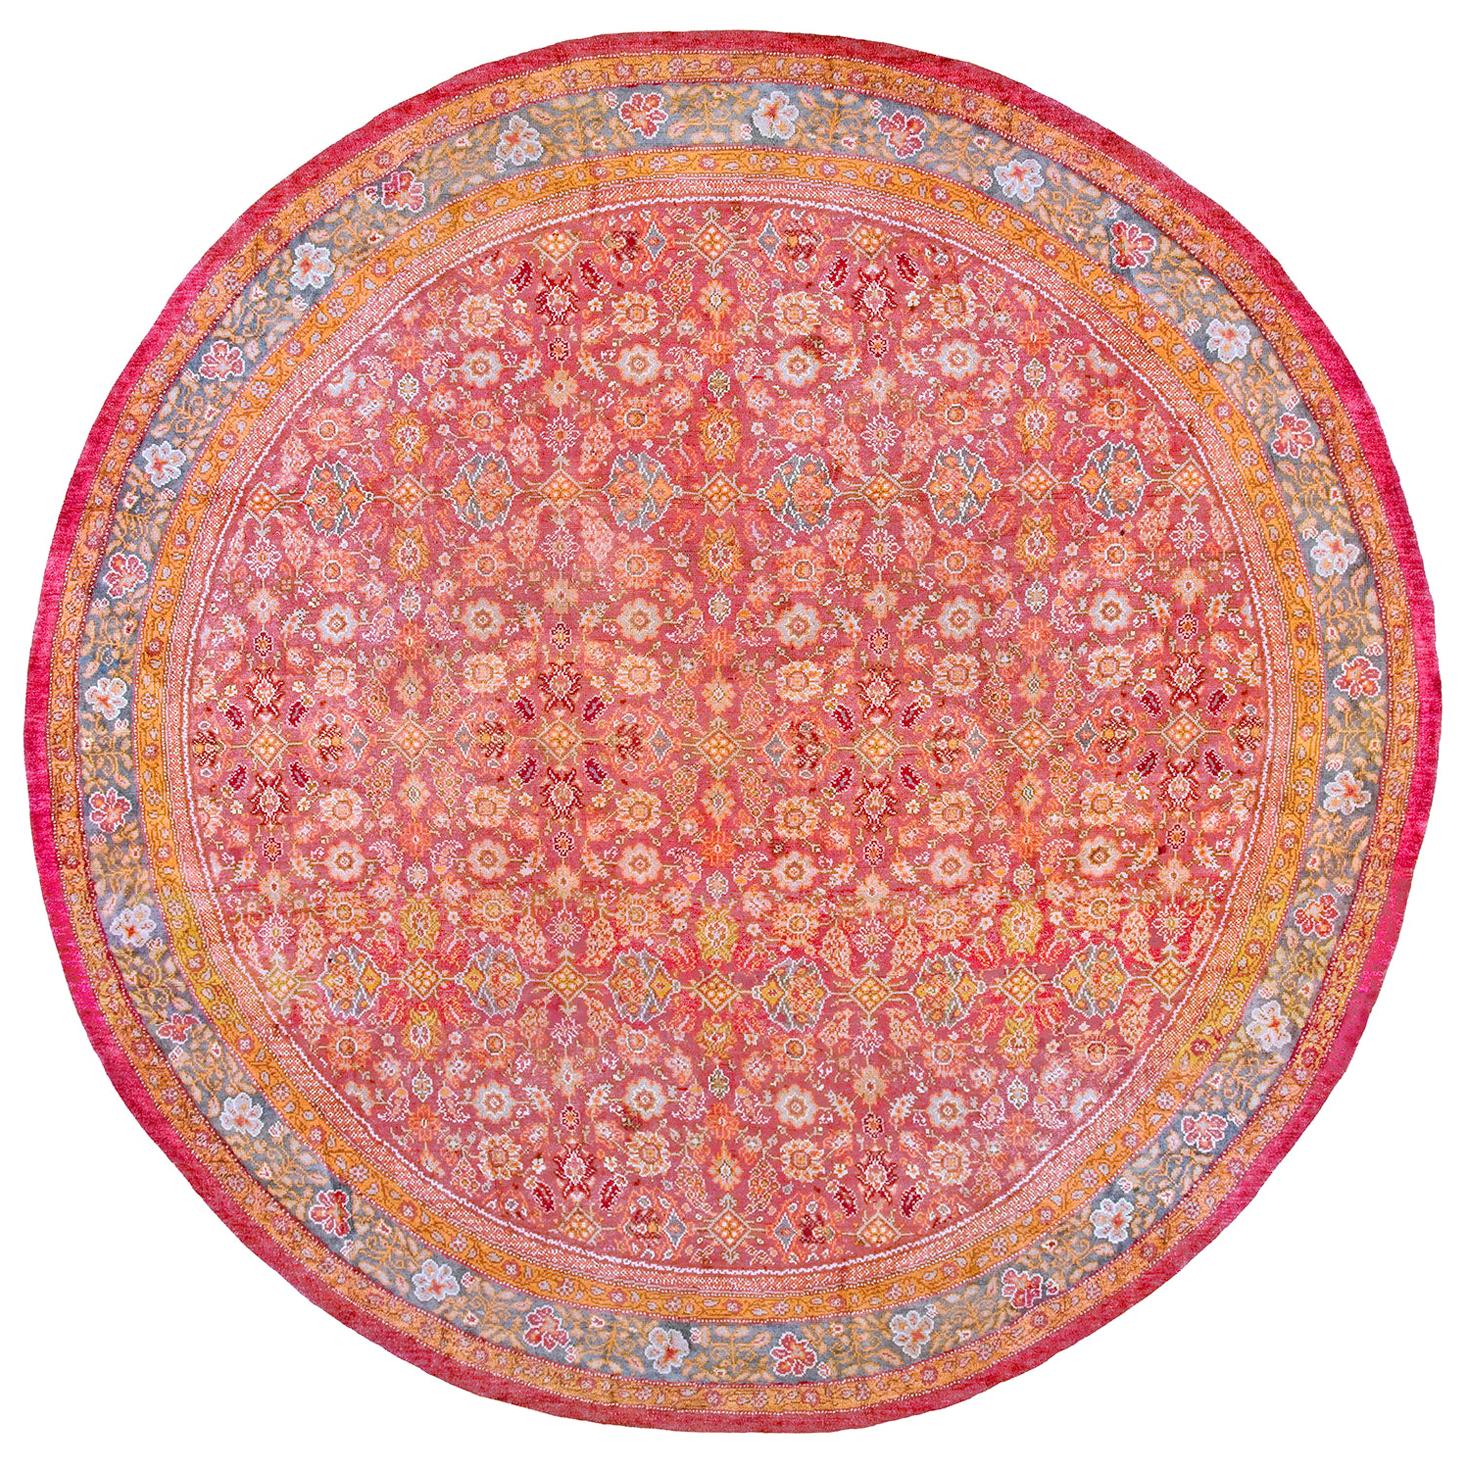 Irischer Donegal Arts & Crafts-Teppich aus dem frühen 20. Jahrhundert 